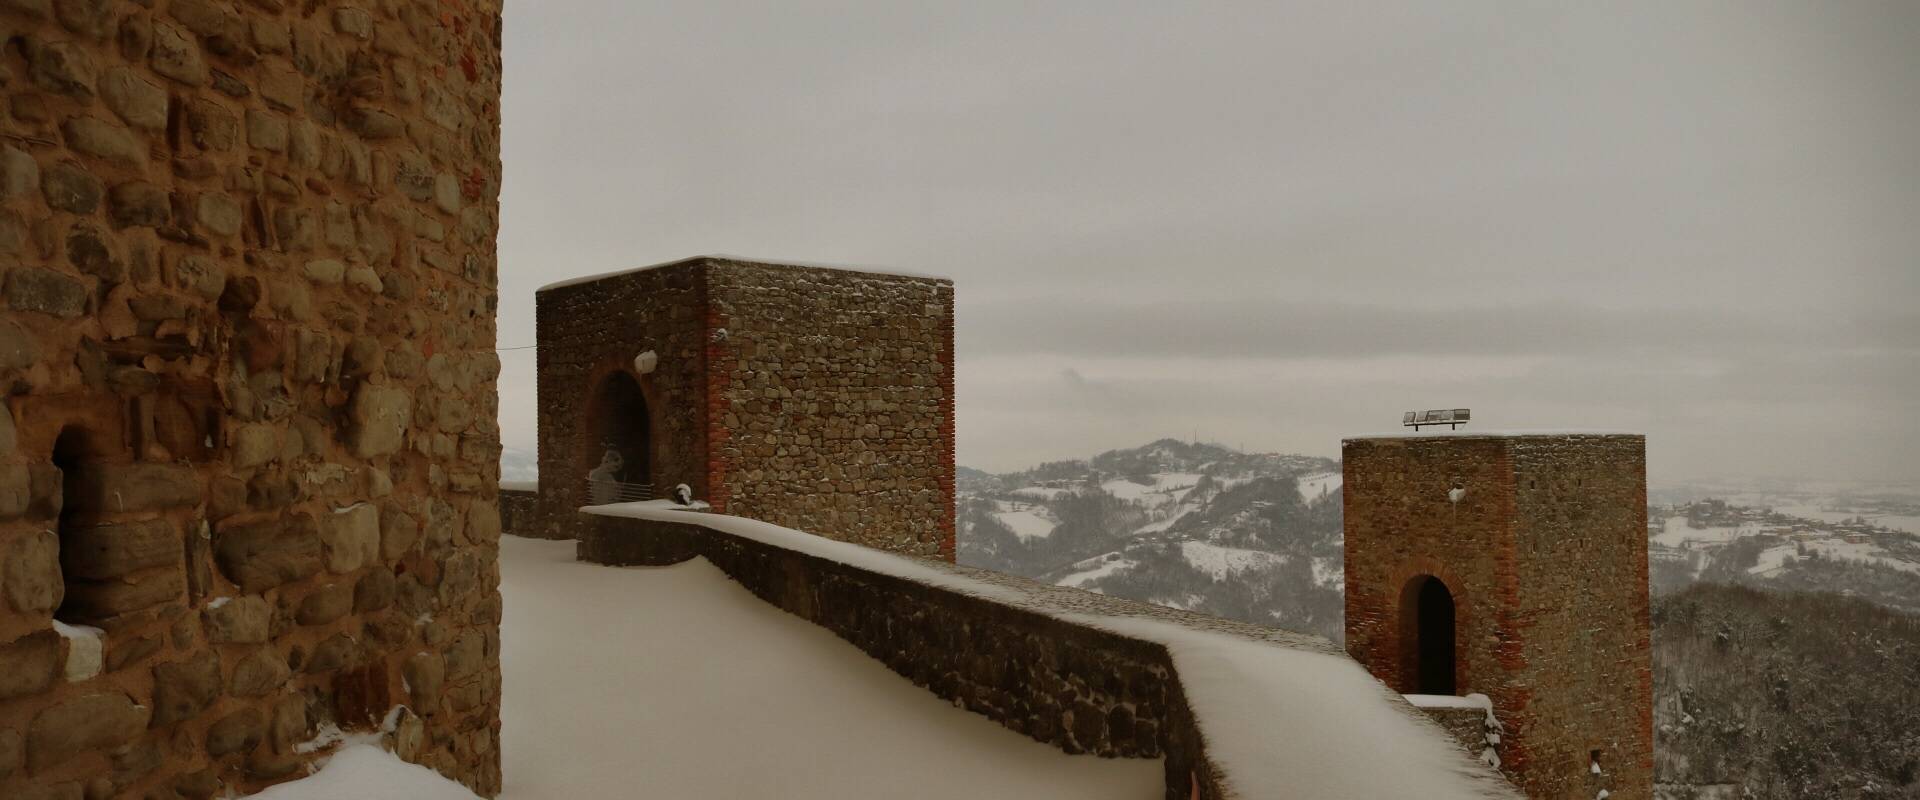 La Rocca e la magia della neve63 foto di Larabraga19